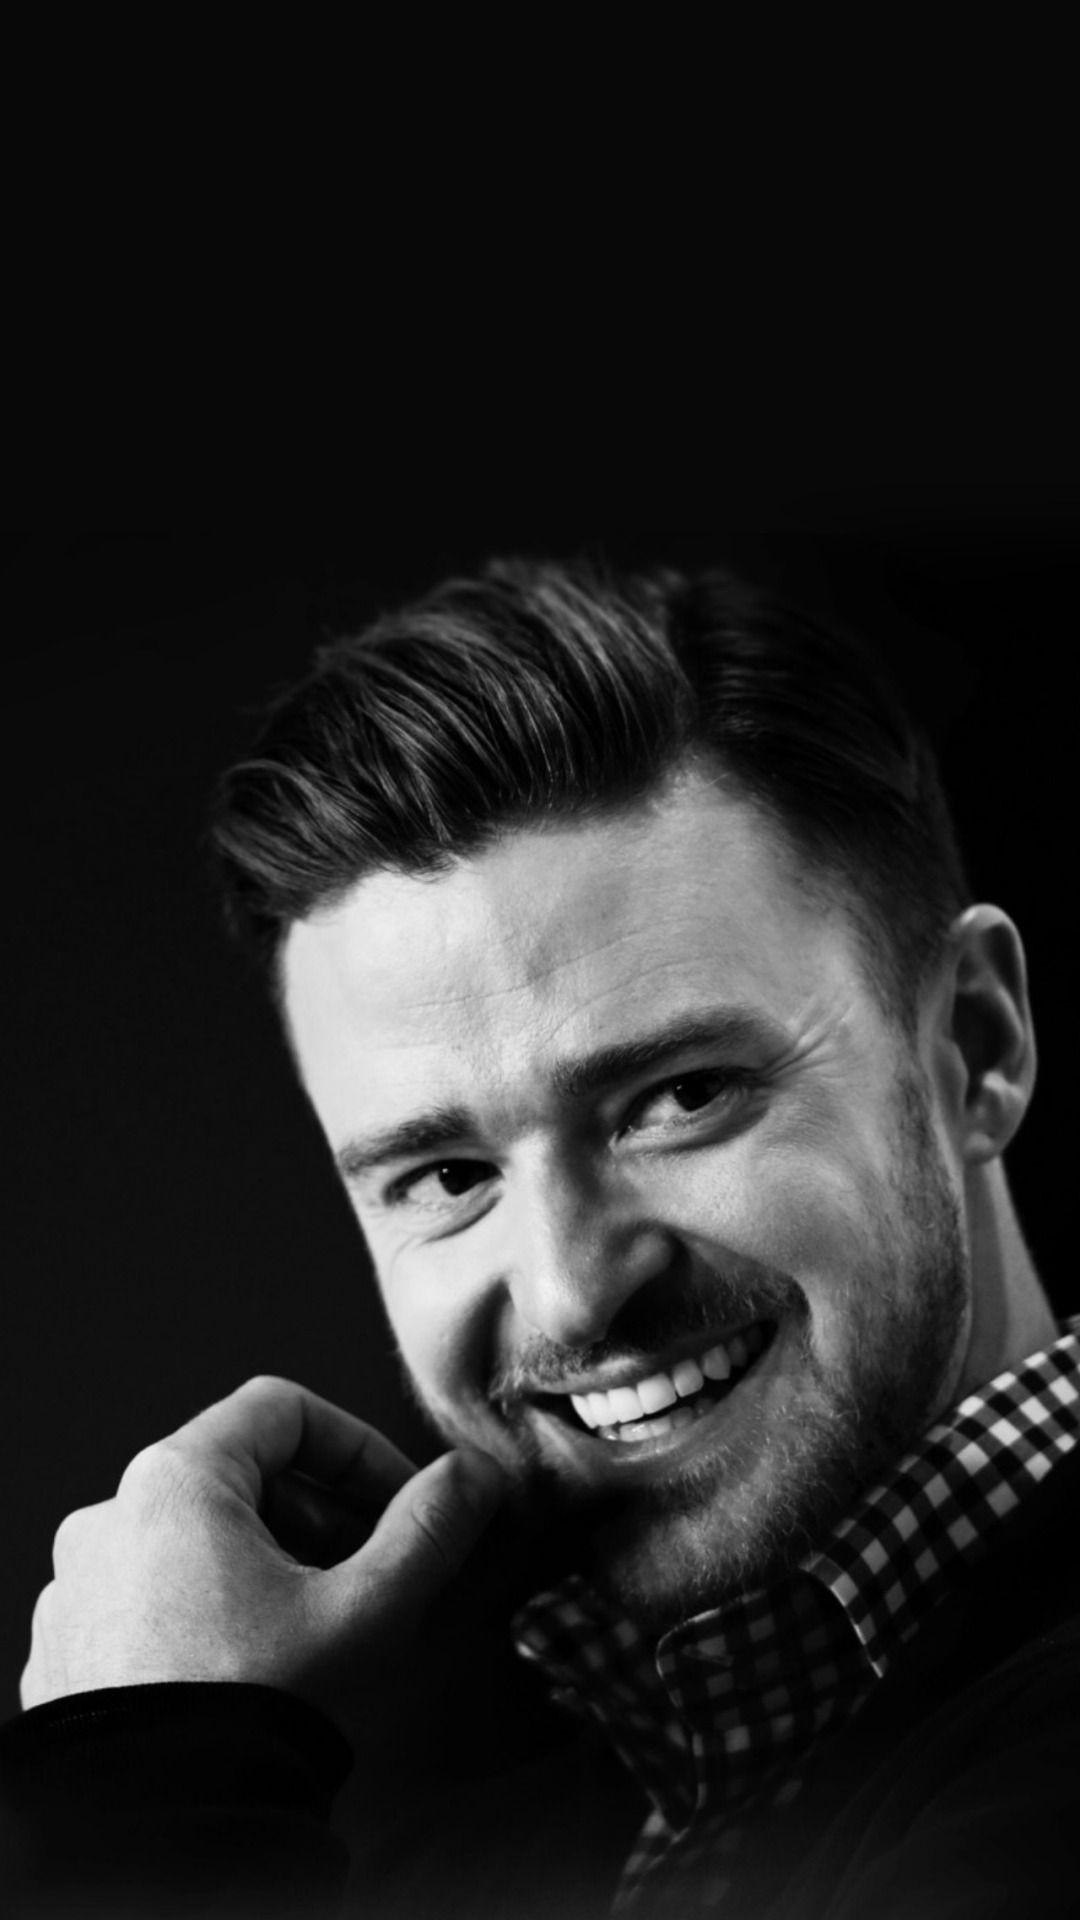 Stylish Justin Timberlake iPhone 5 / SE Wallpaper